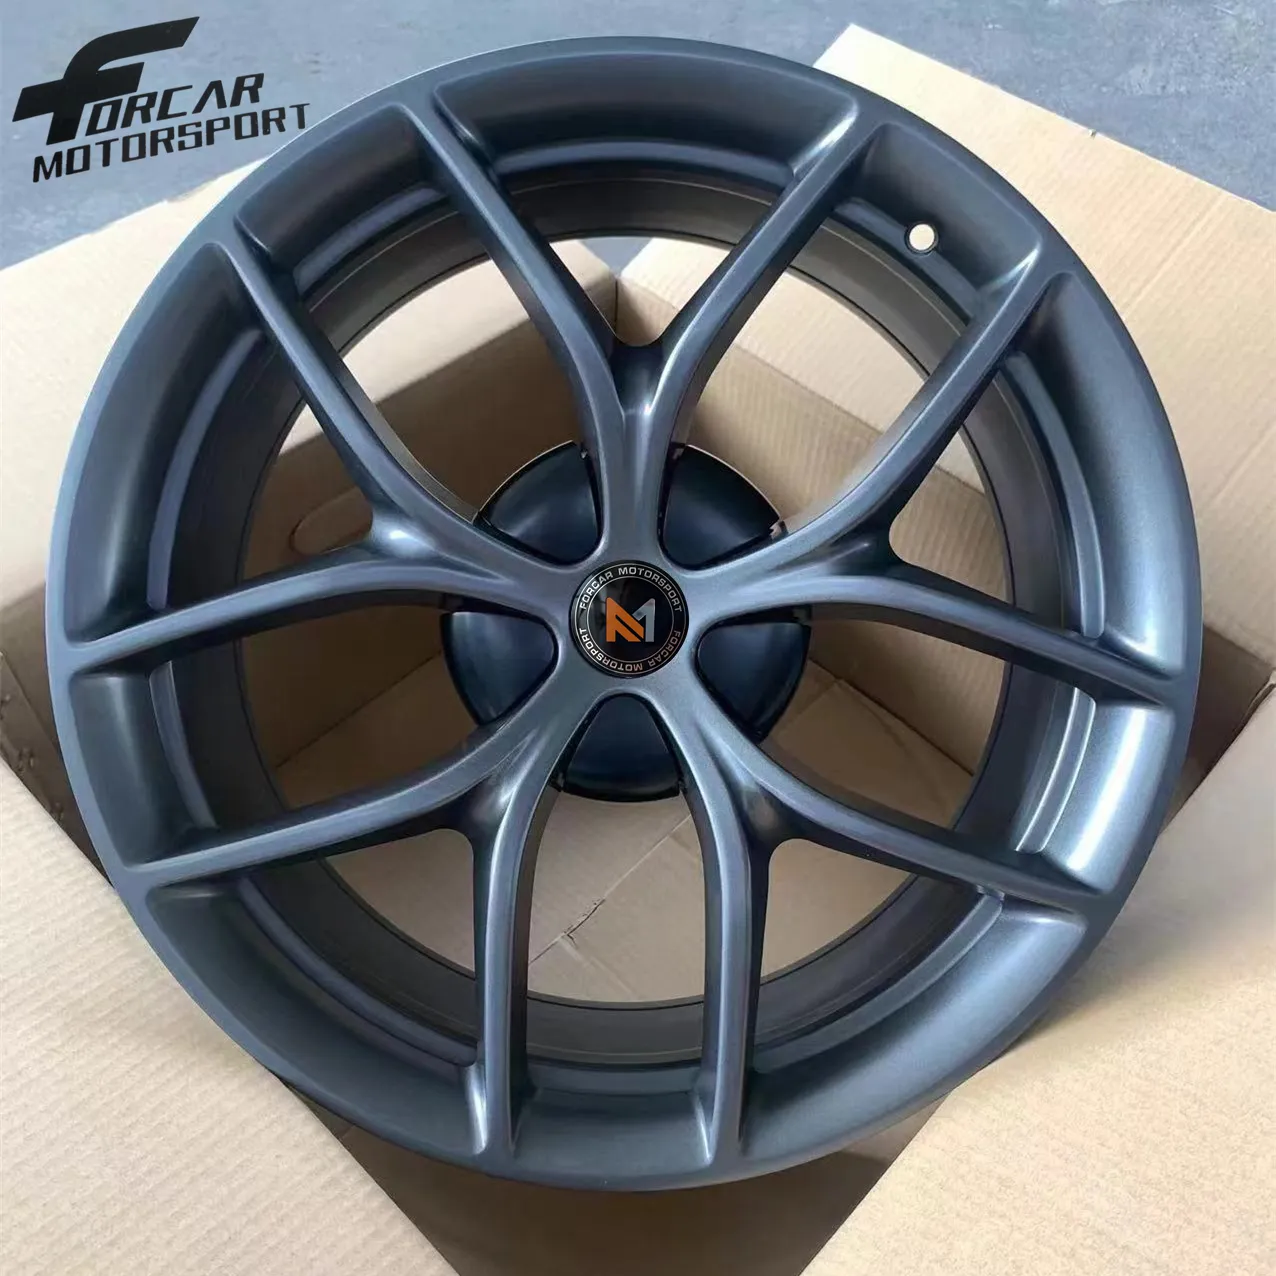 Nuevo diseño de rueda de formación de flujo 18 19 20 pulgadas 5x114,3 llantas de aleación de aluminio para automóviles Tesla